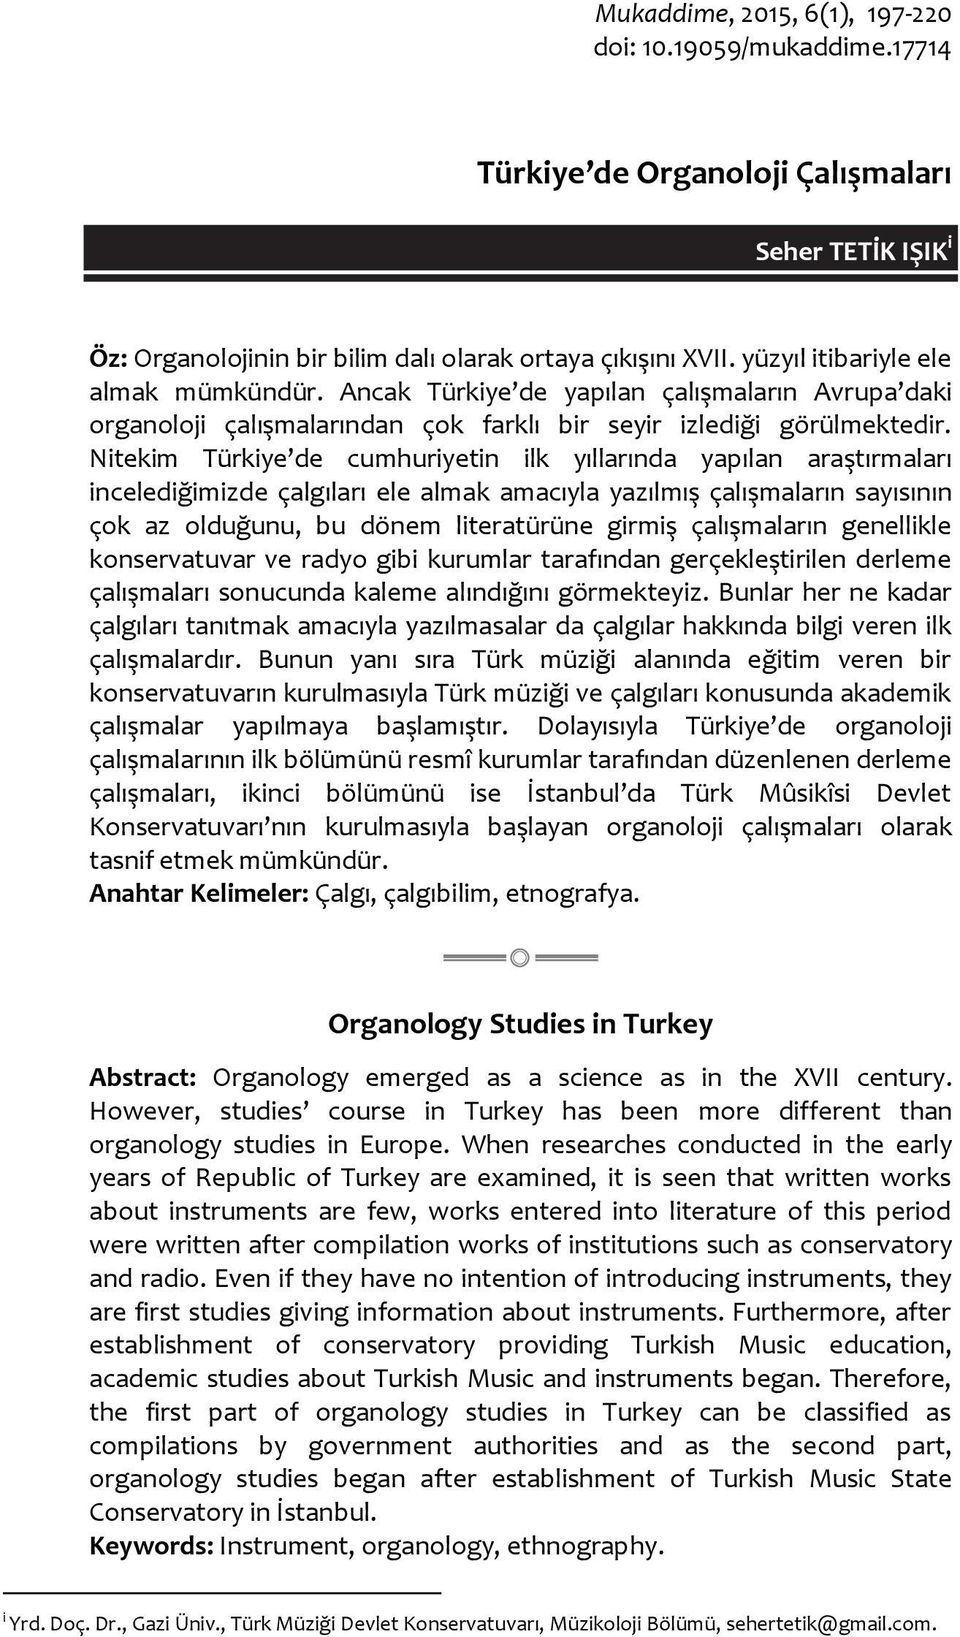 Nitekim Türkiye de cumhuriyetin ilk yıllarında yapılan araştırmaları incelediğimizde çalgıları ele almak amacıyla yazılmış çalışmaların sayısının çok az olduğunu, bu dönem literatürüne girmiş